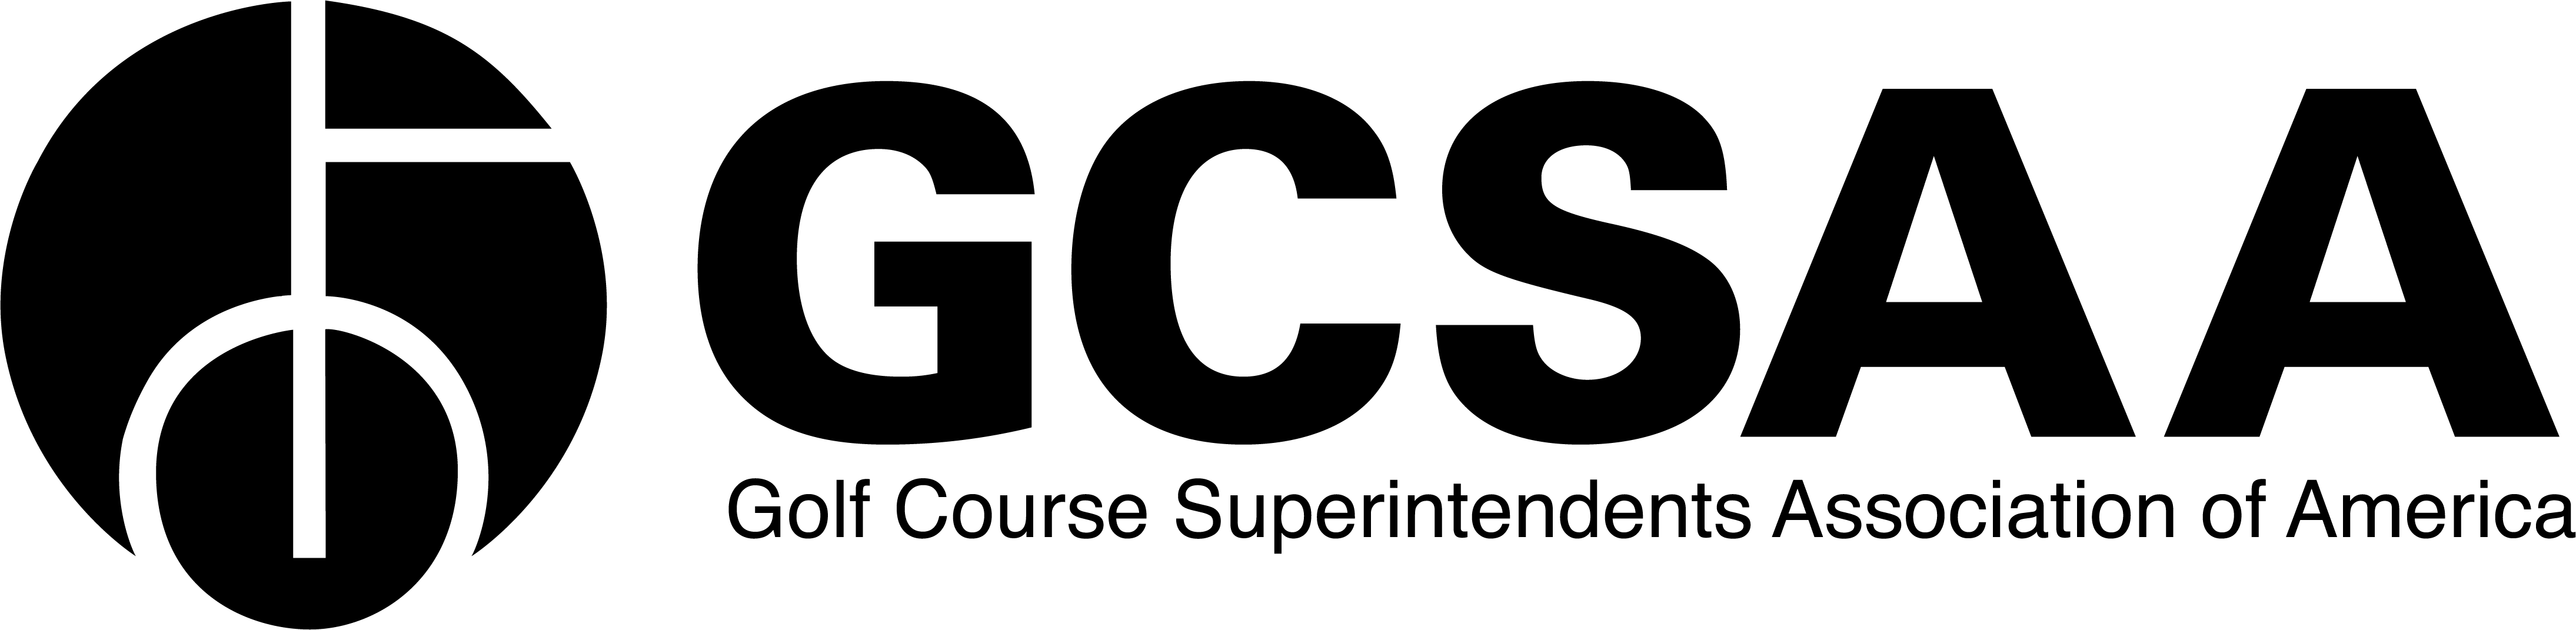 Low Logo - GCSAA Logos | GCSAA